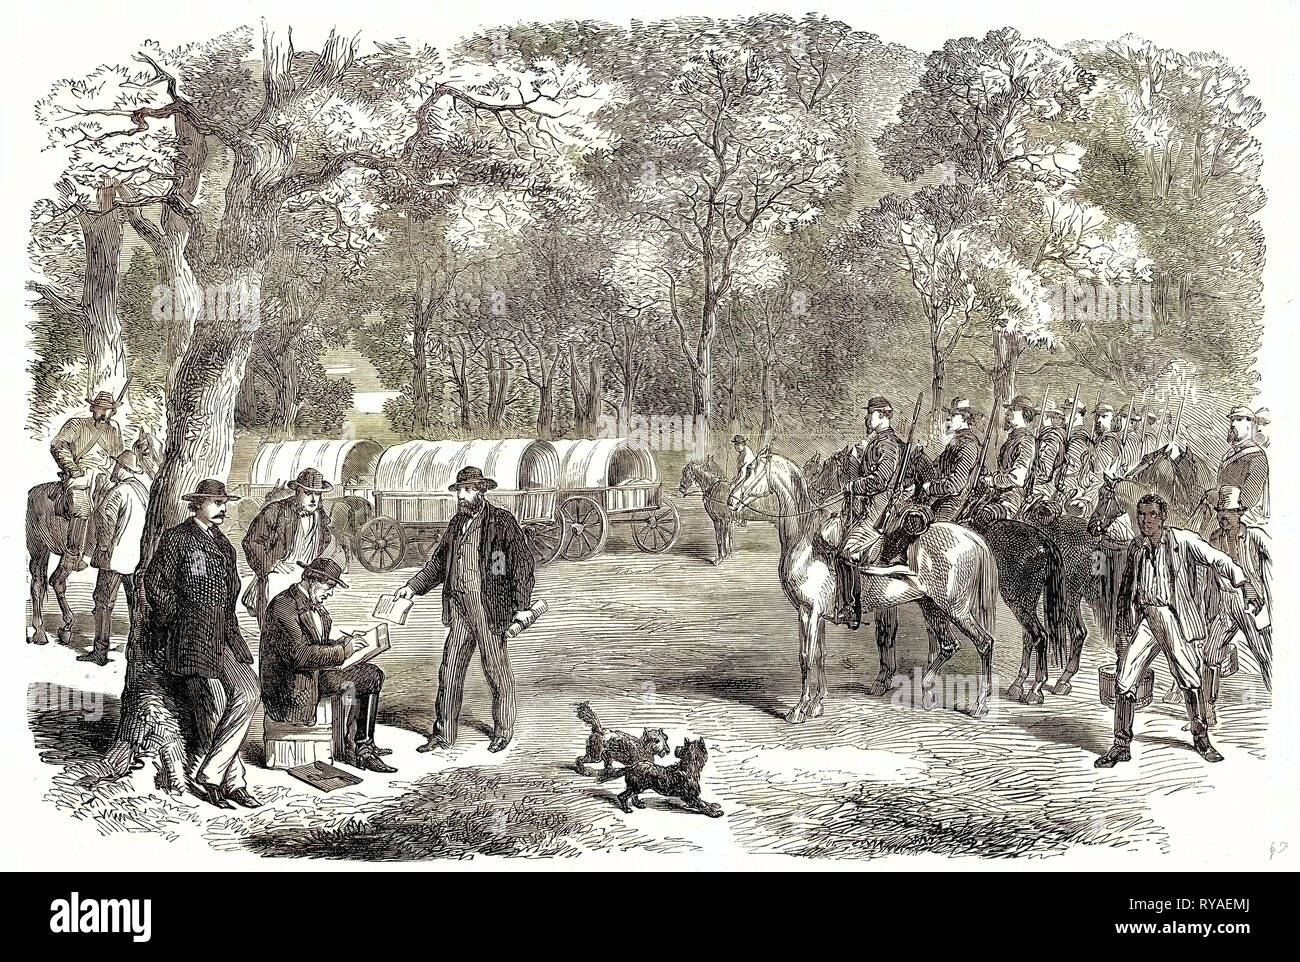 Ende des Amerikanischen Bürgerkriegs der letzten Tage der konföderierten Regierung Herr Jefferson Davis Unterzeichnung Handlungen der Regierung am Straßenrand vom 22. Juli 1865 Stockfoto